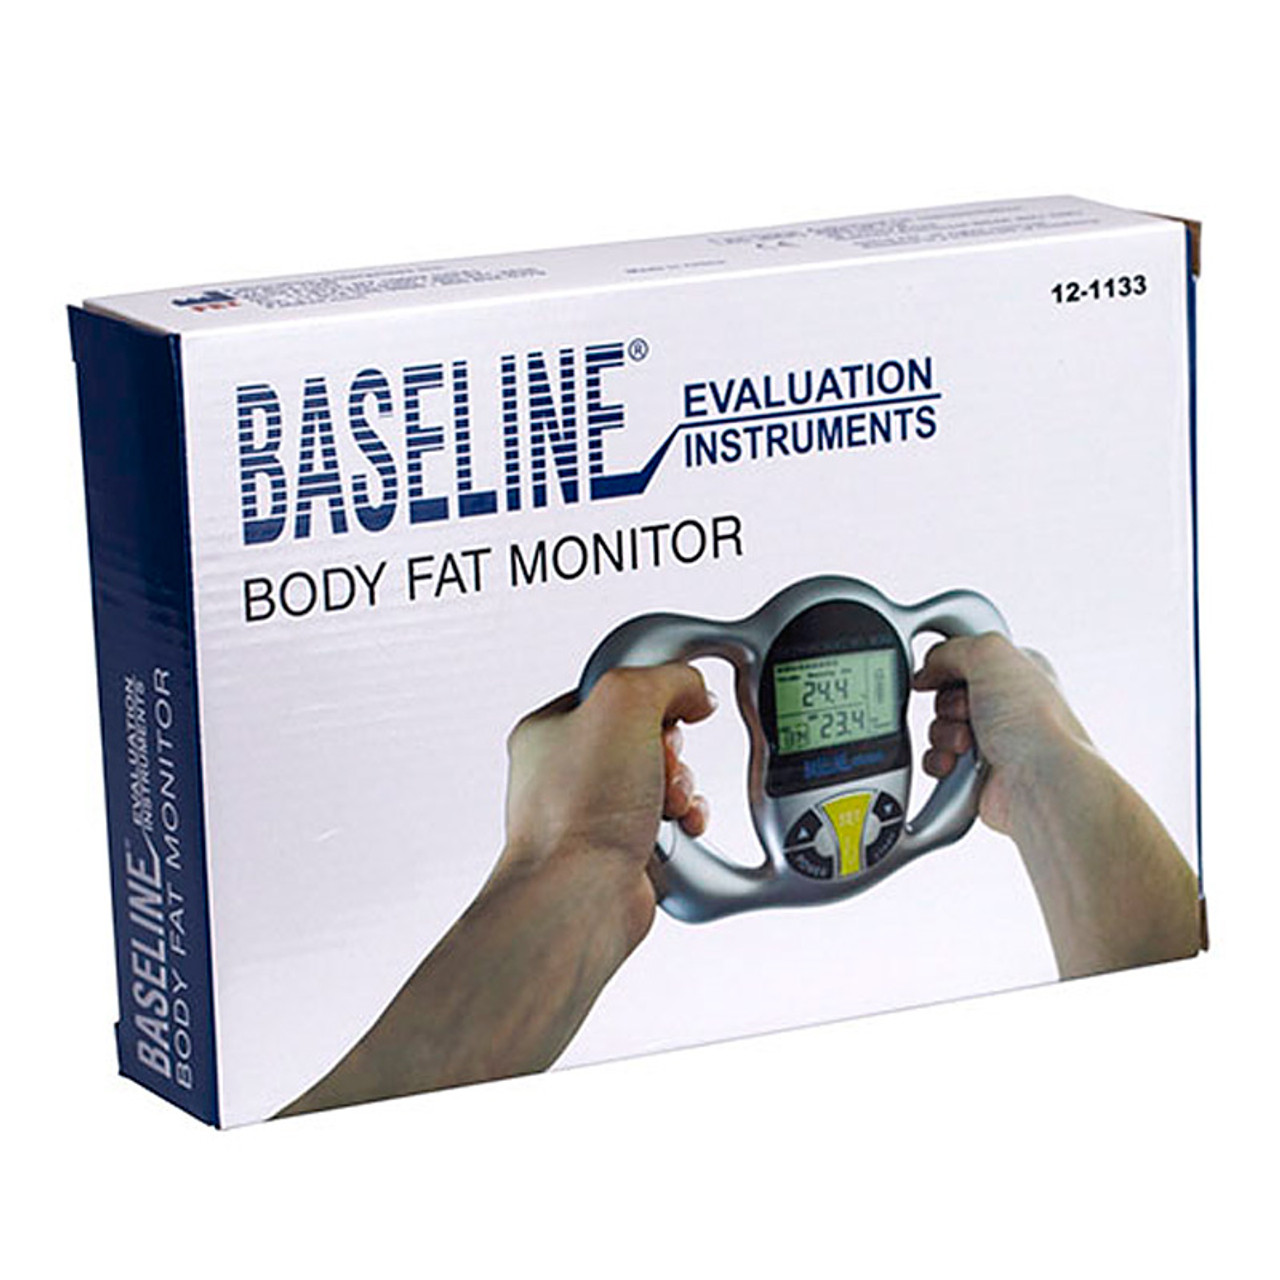 Baseline Handheld Bodyfat Analyzer